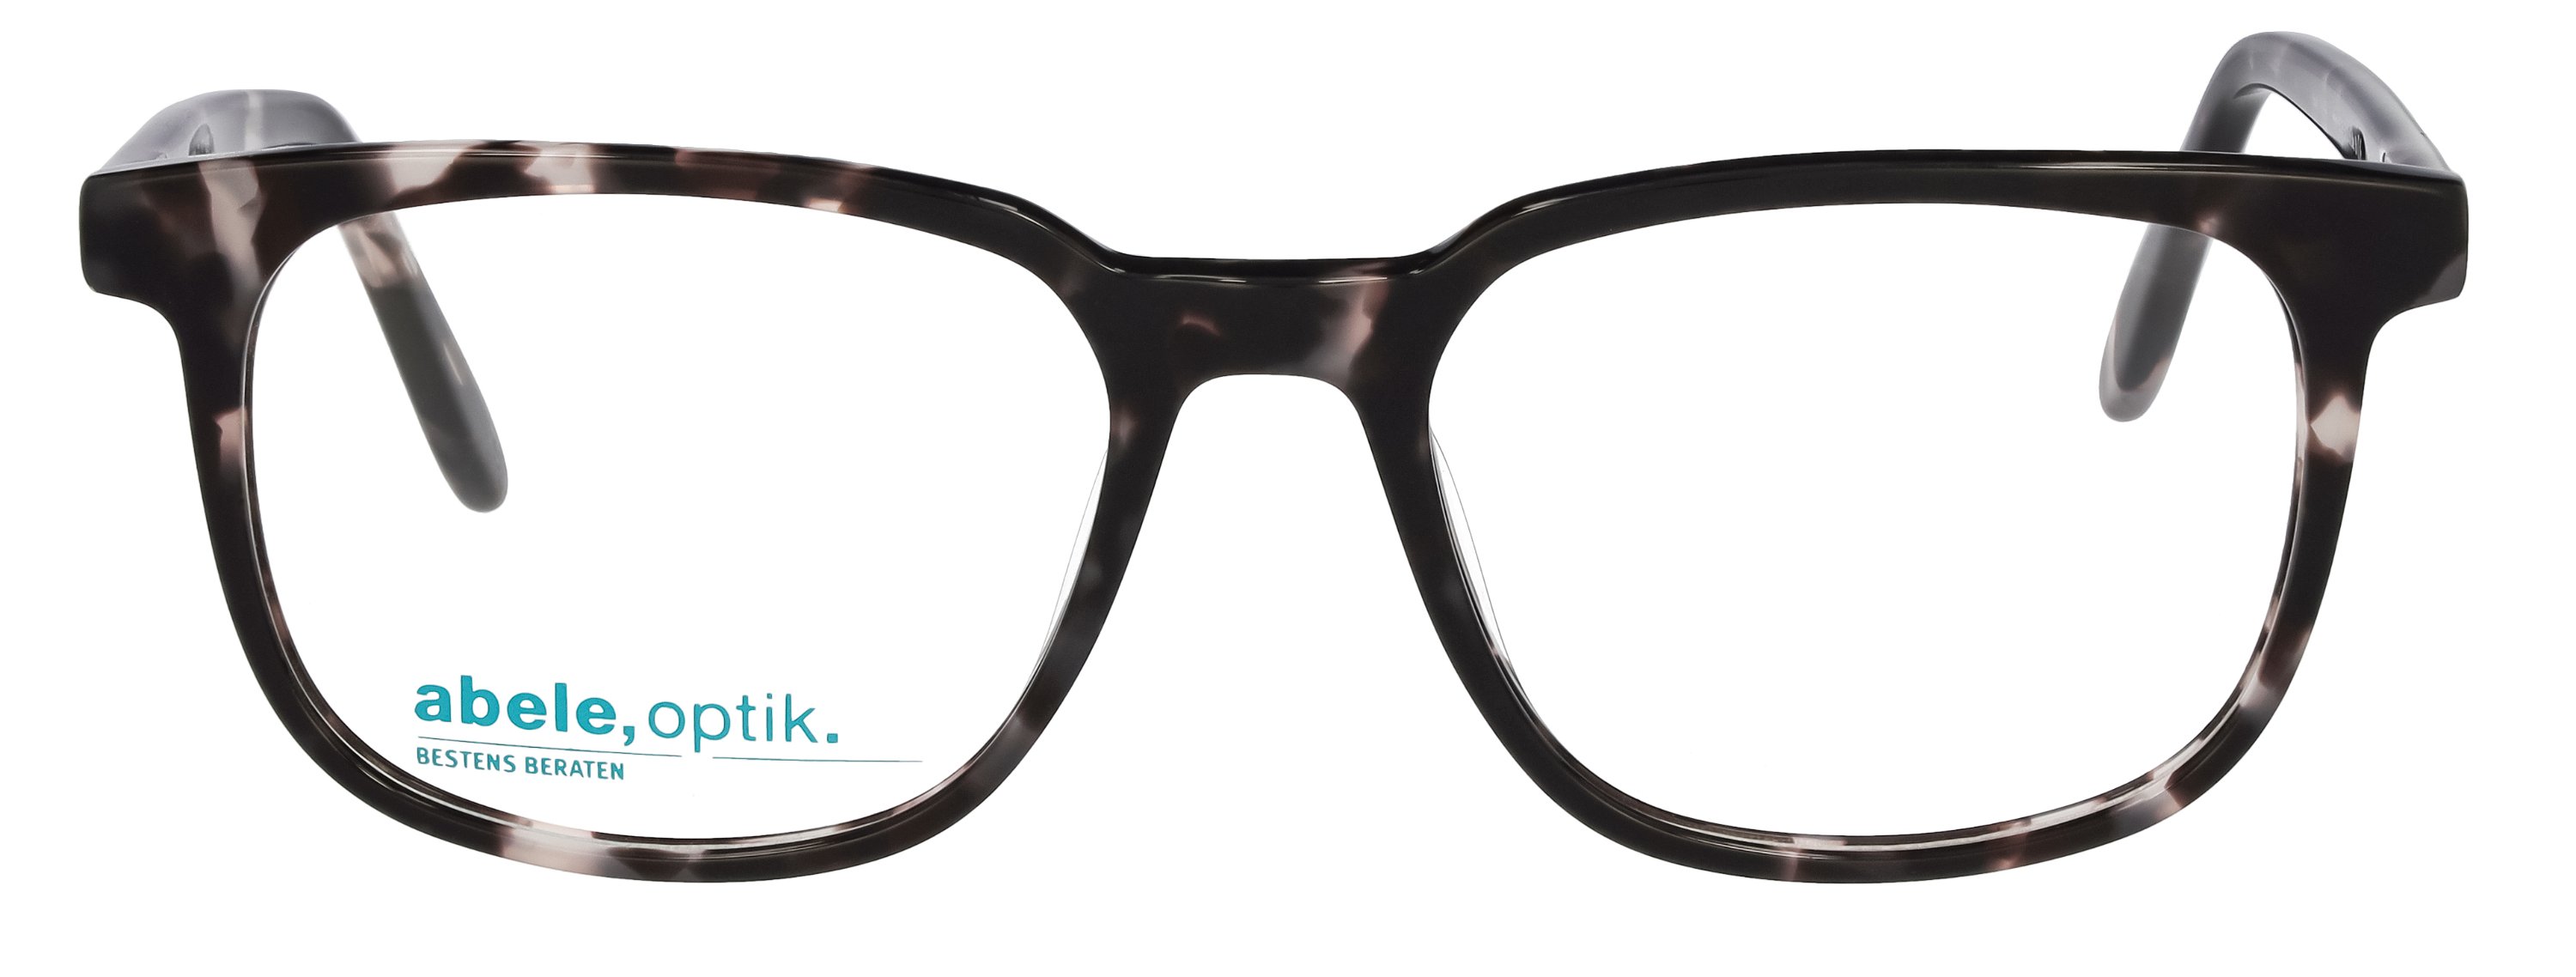 abele optik Herren / gemustert Brille 148301 für schwarz braun in